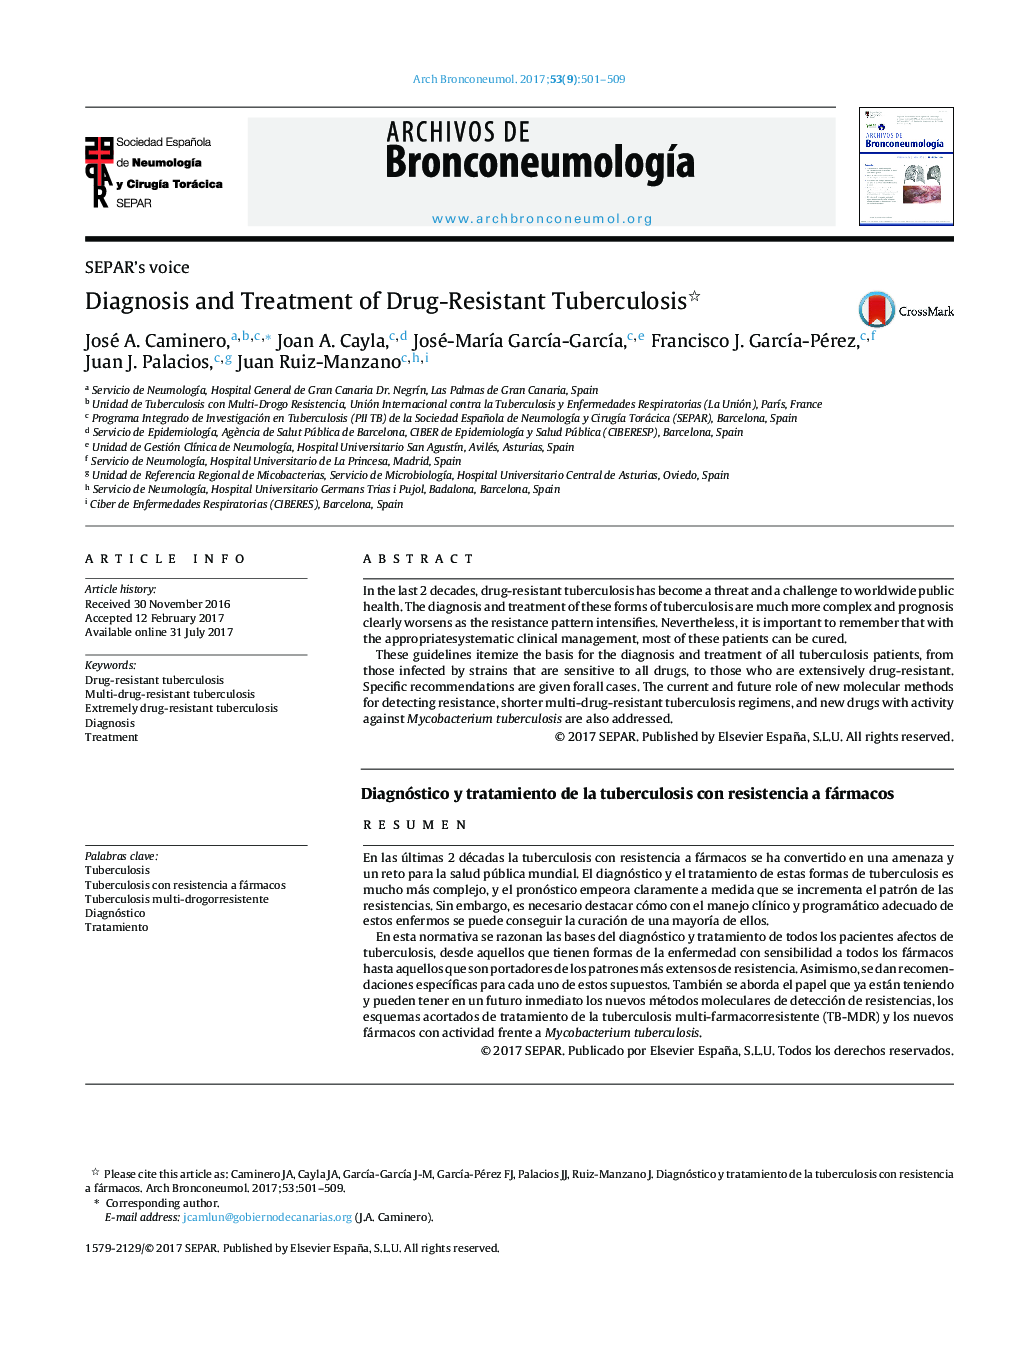 SEPAR's voiceDiagnosis and Treatment of Drug-Resistant TuberculosisDiagnóstico y tratamiento de la tuberculosis con resistencia a fármacos